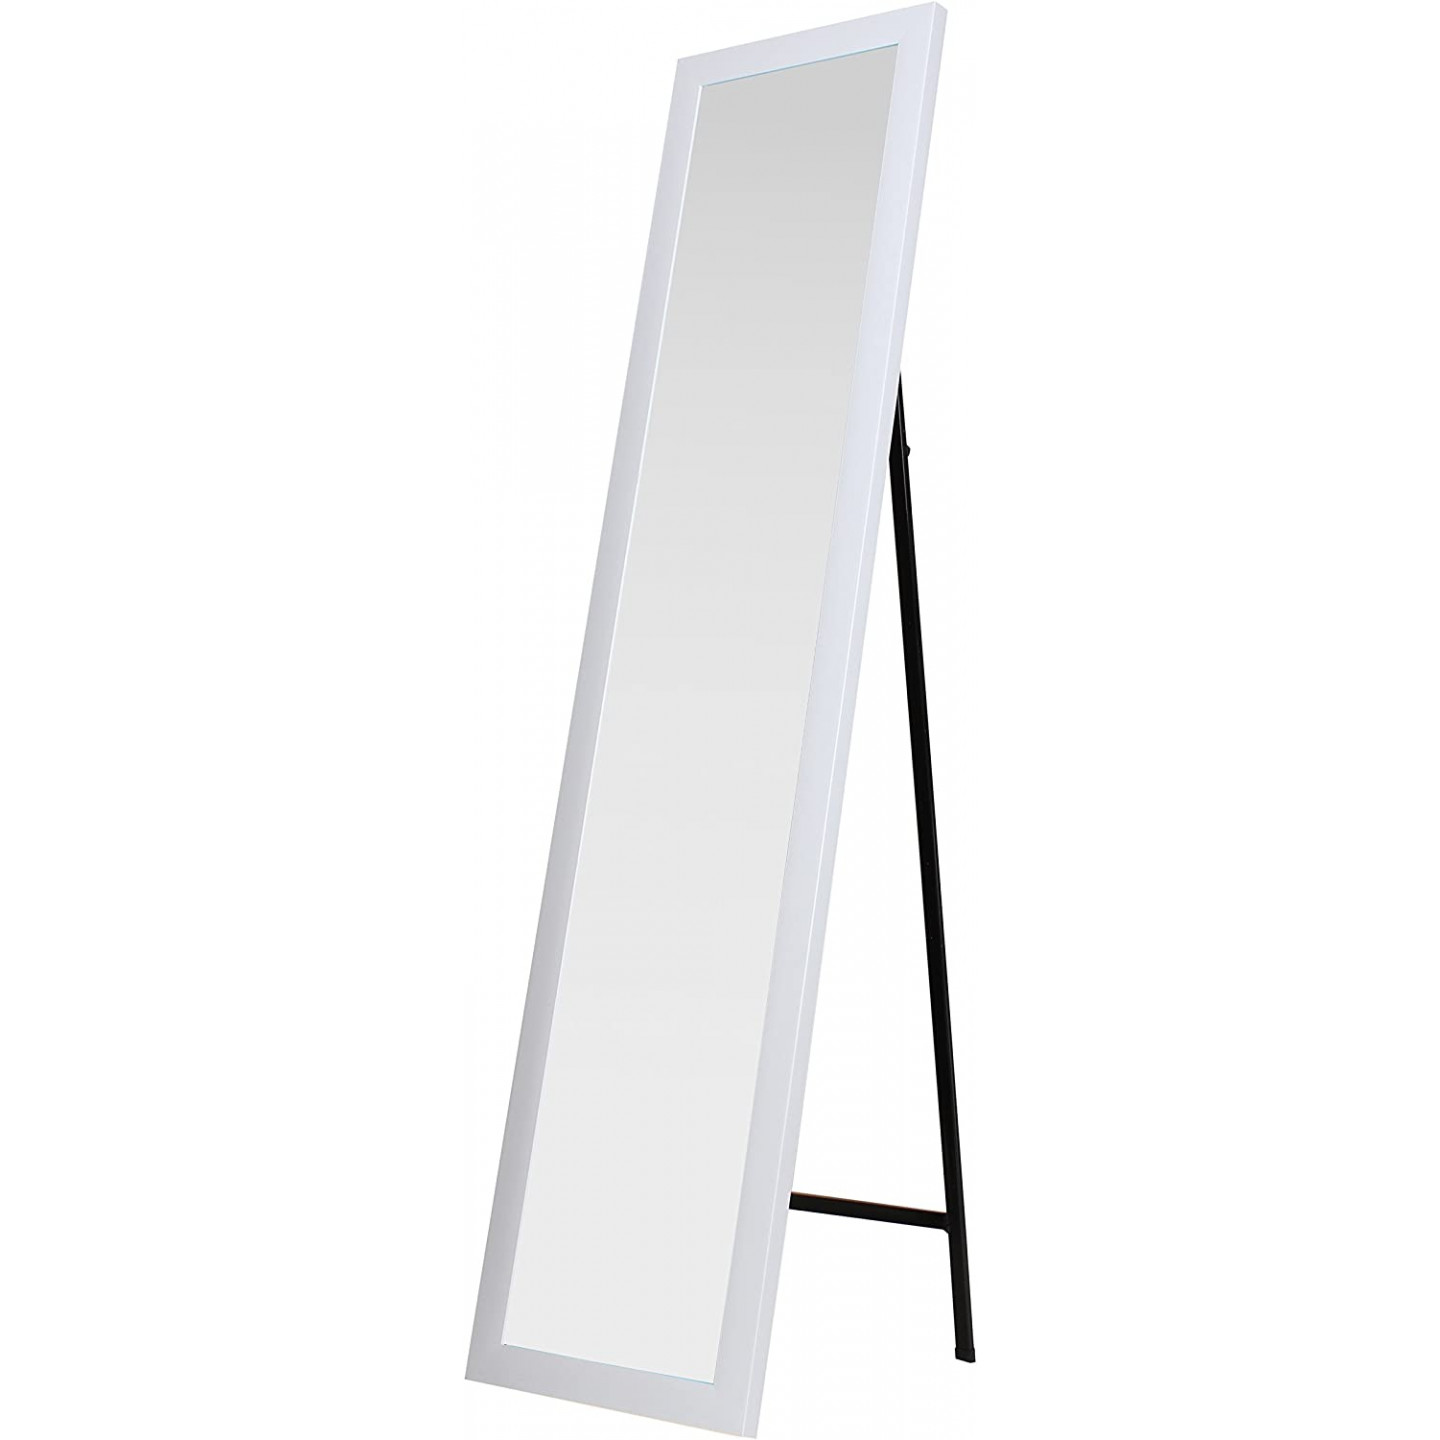 Specchio da terra o parete con cornice in legno bianca 36x126 cm